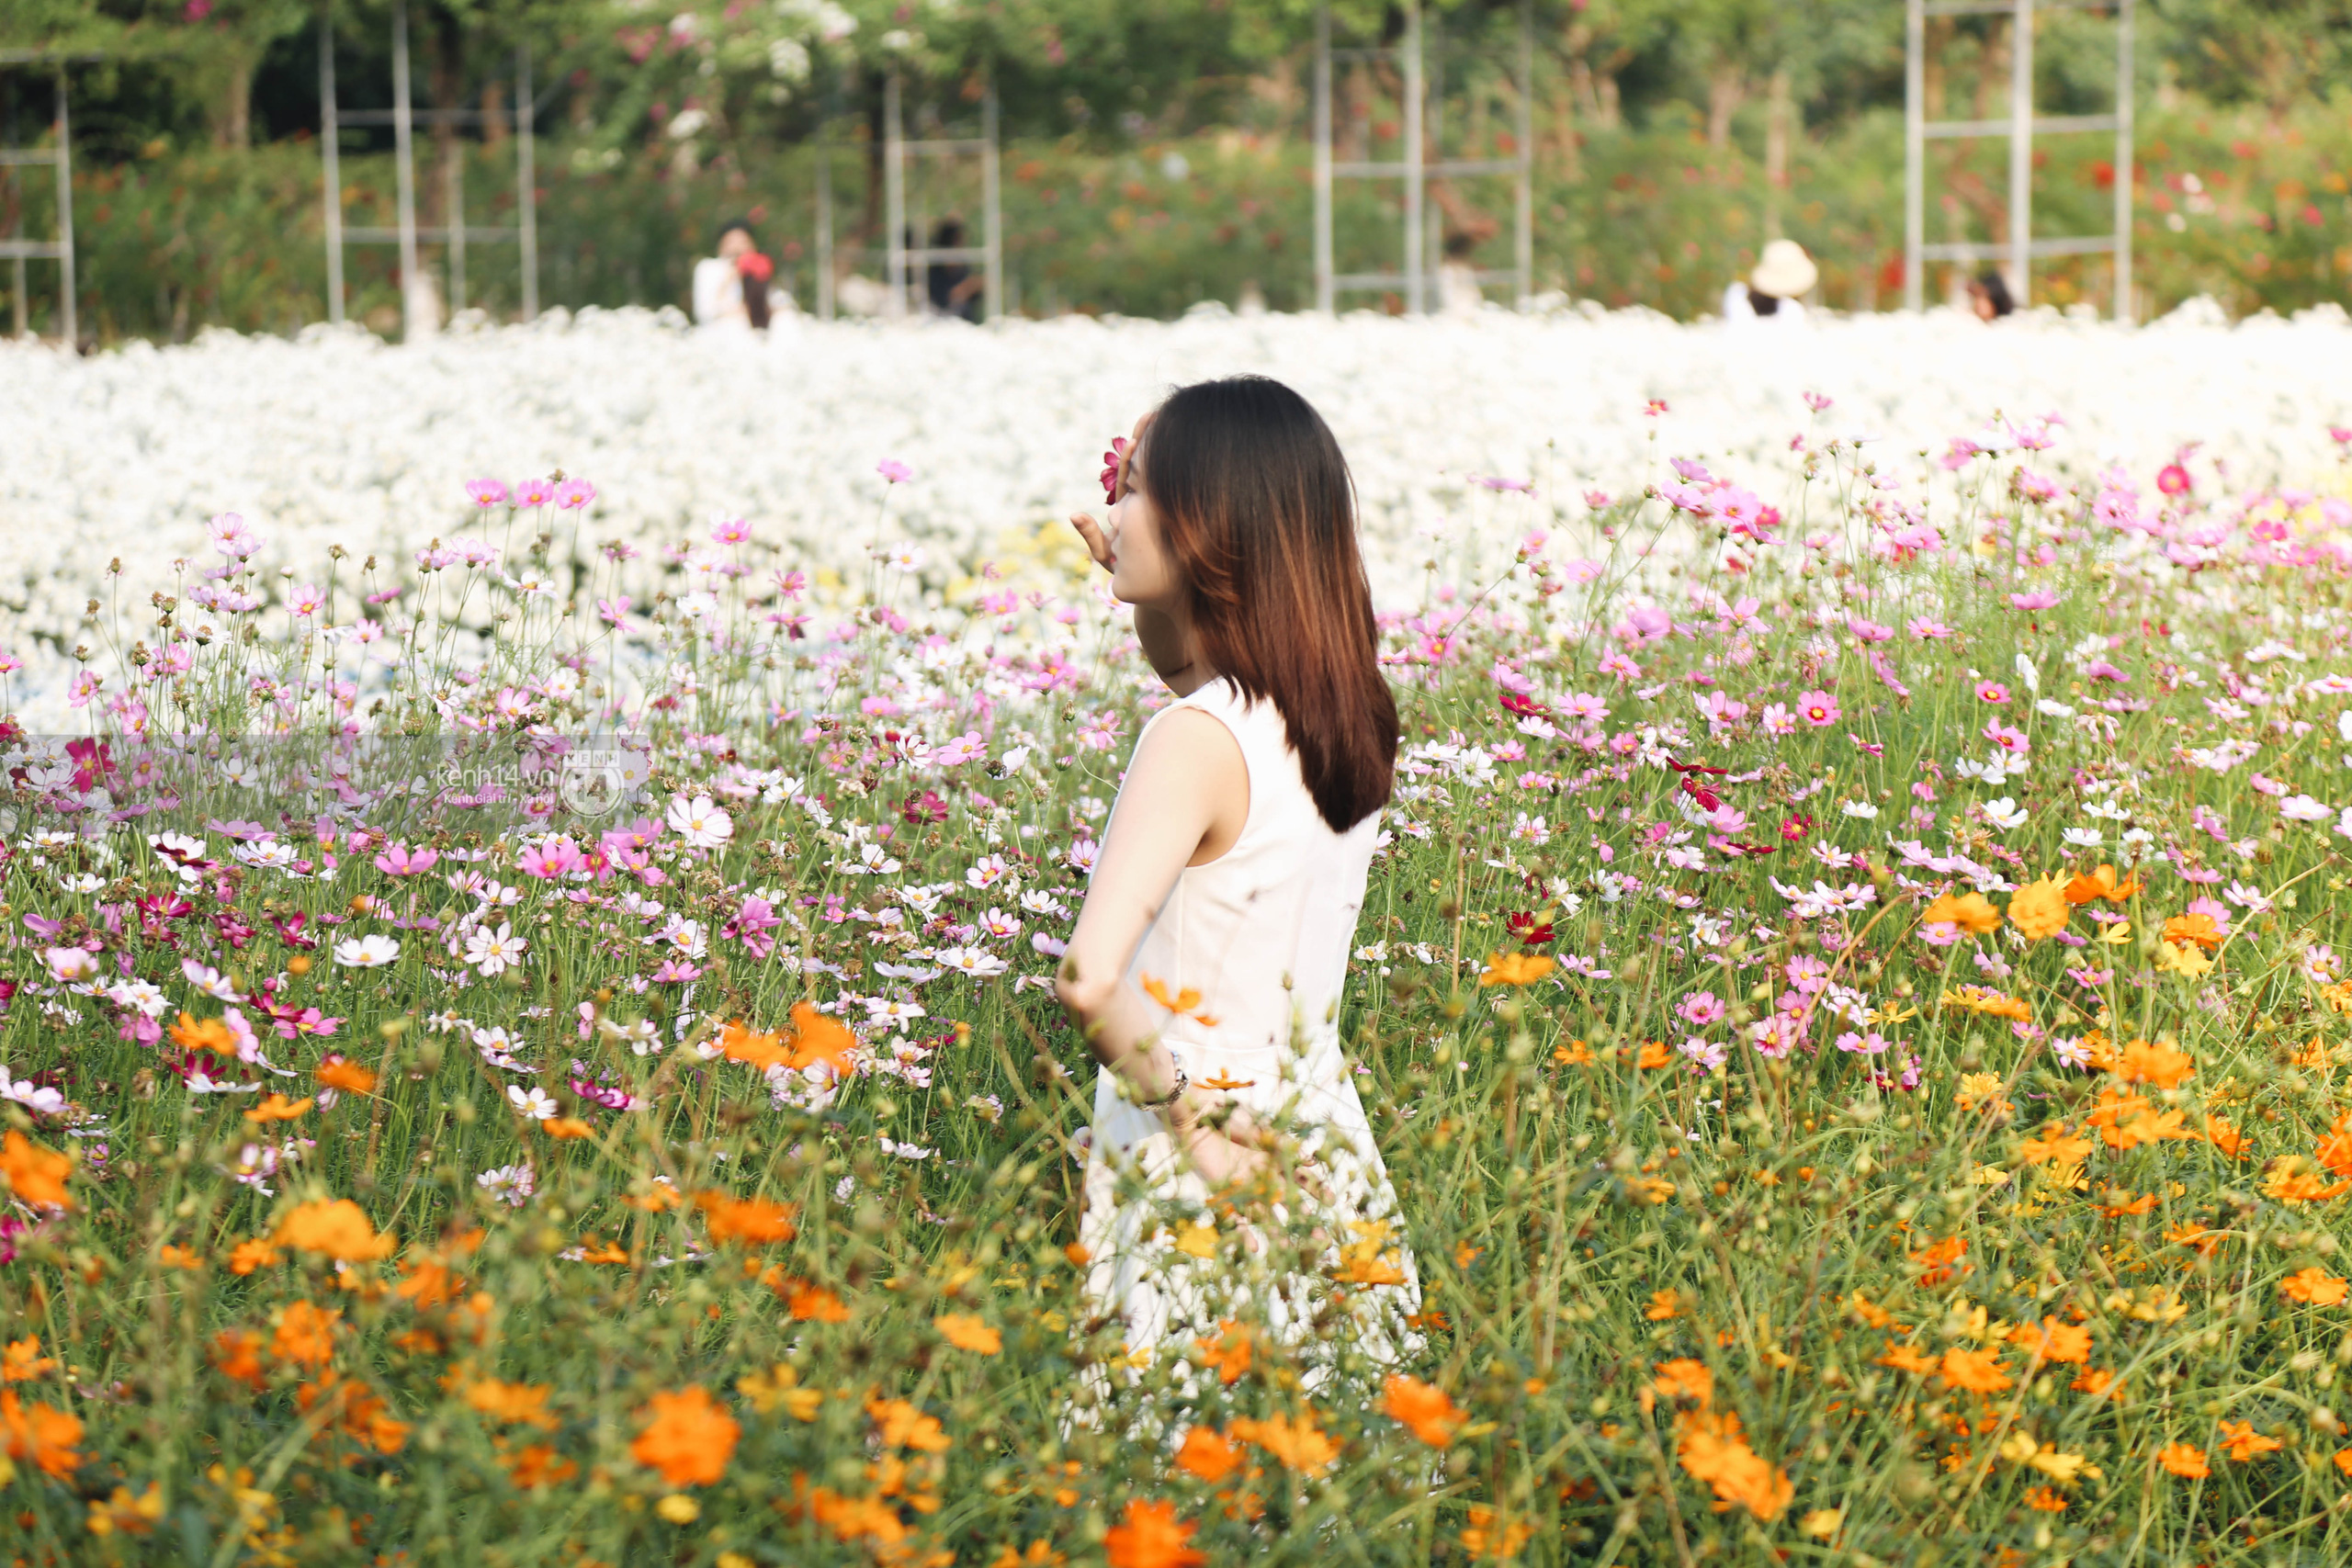 Trường ĐH rộng gần 200ha có vườn hoa đẹp nhất mùa đông Hà Nội, nhiều góc sống ảo cực chill chỉ với 25K - Ảnh 5.